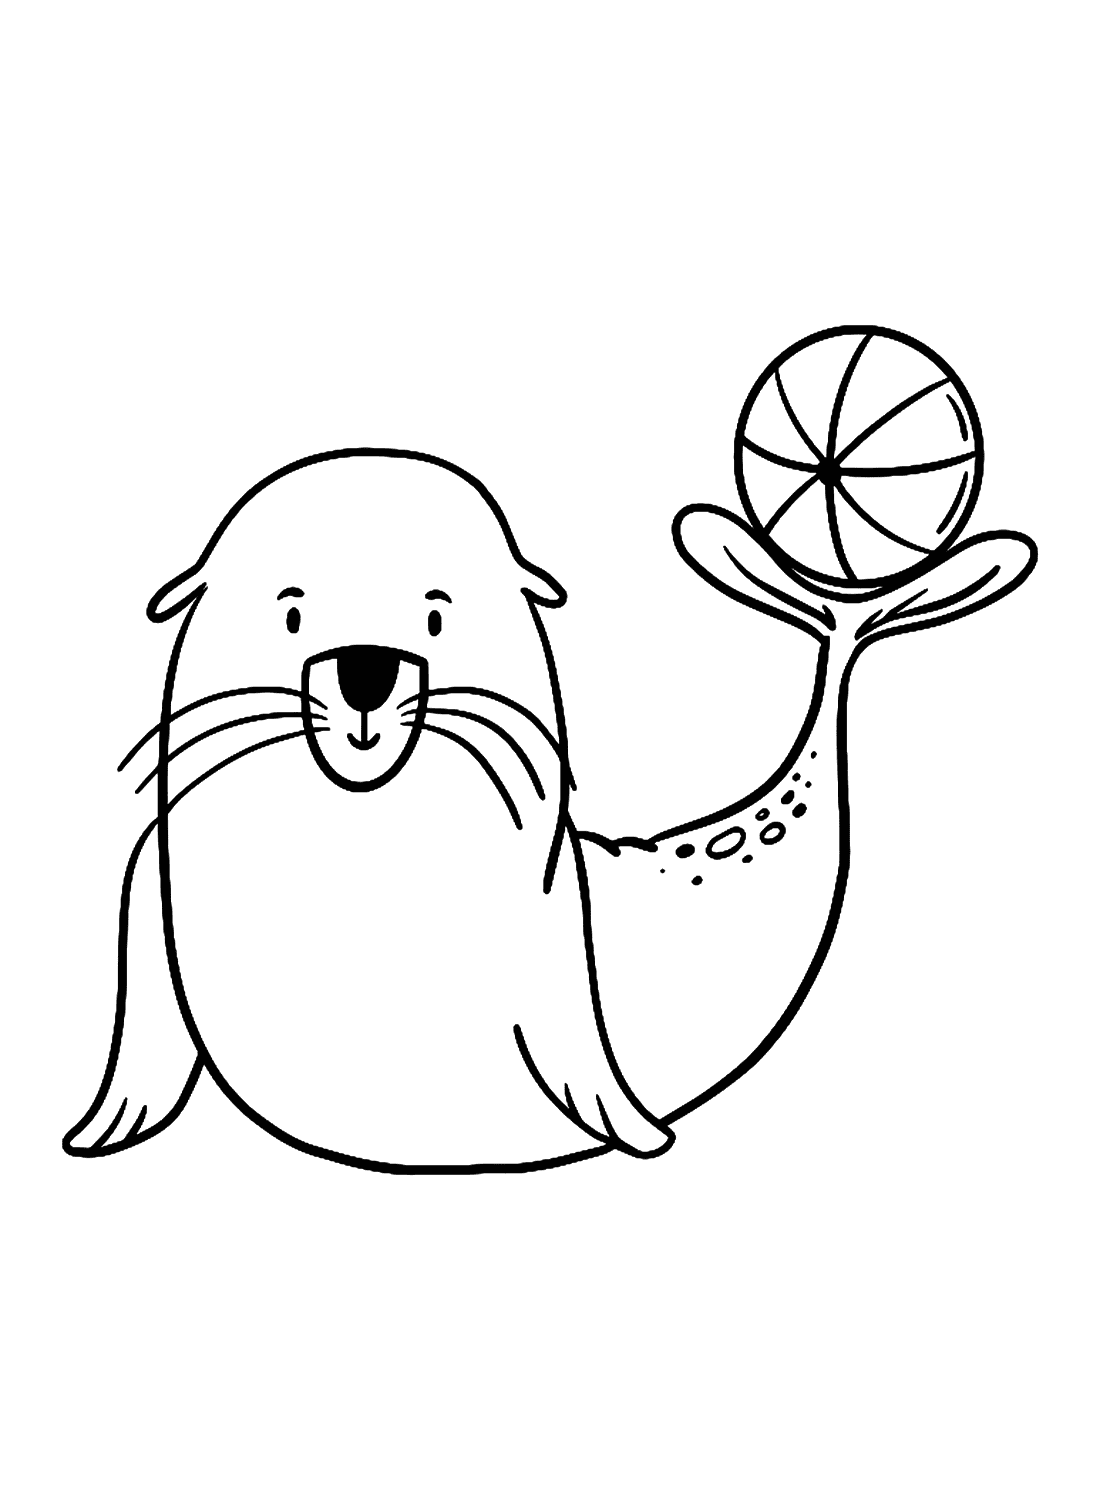 Leão-marinho de desenho animado brincando com uma bola from Leão-marinho